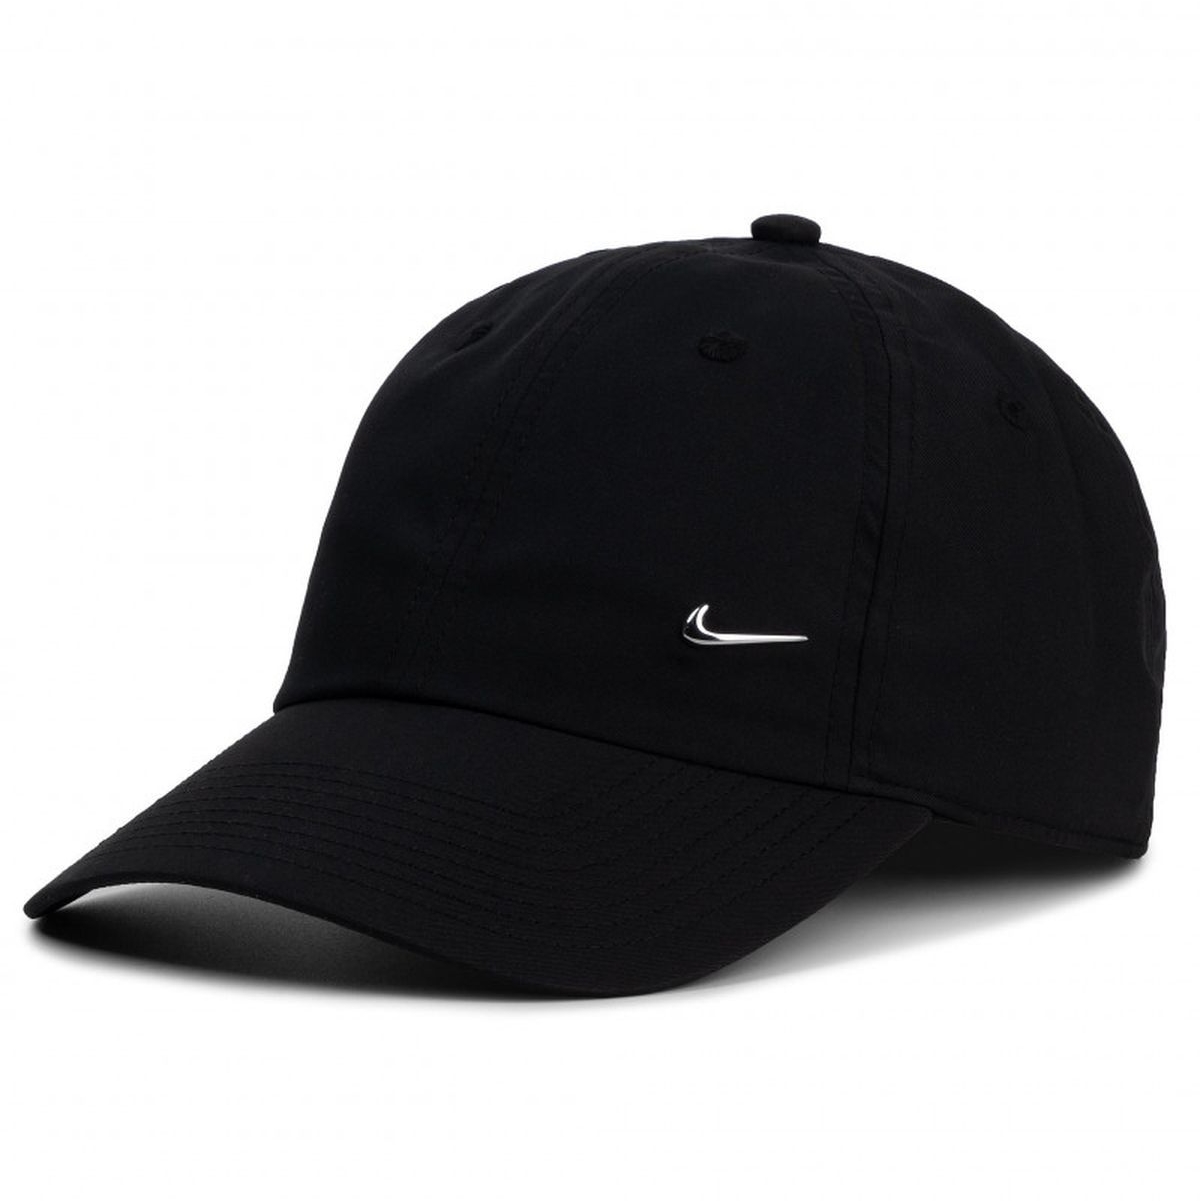 Casquettes et chapeaux homme Nike metal swoosh noir